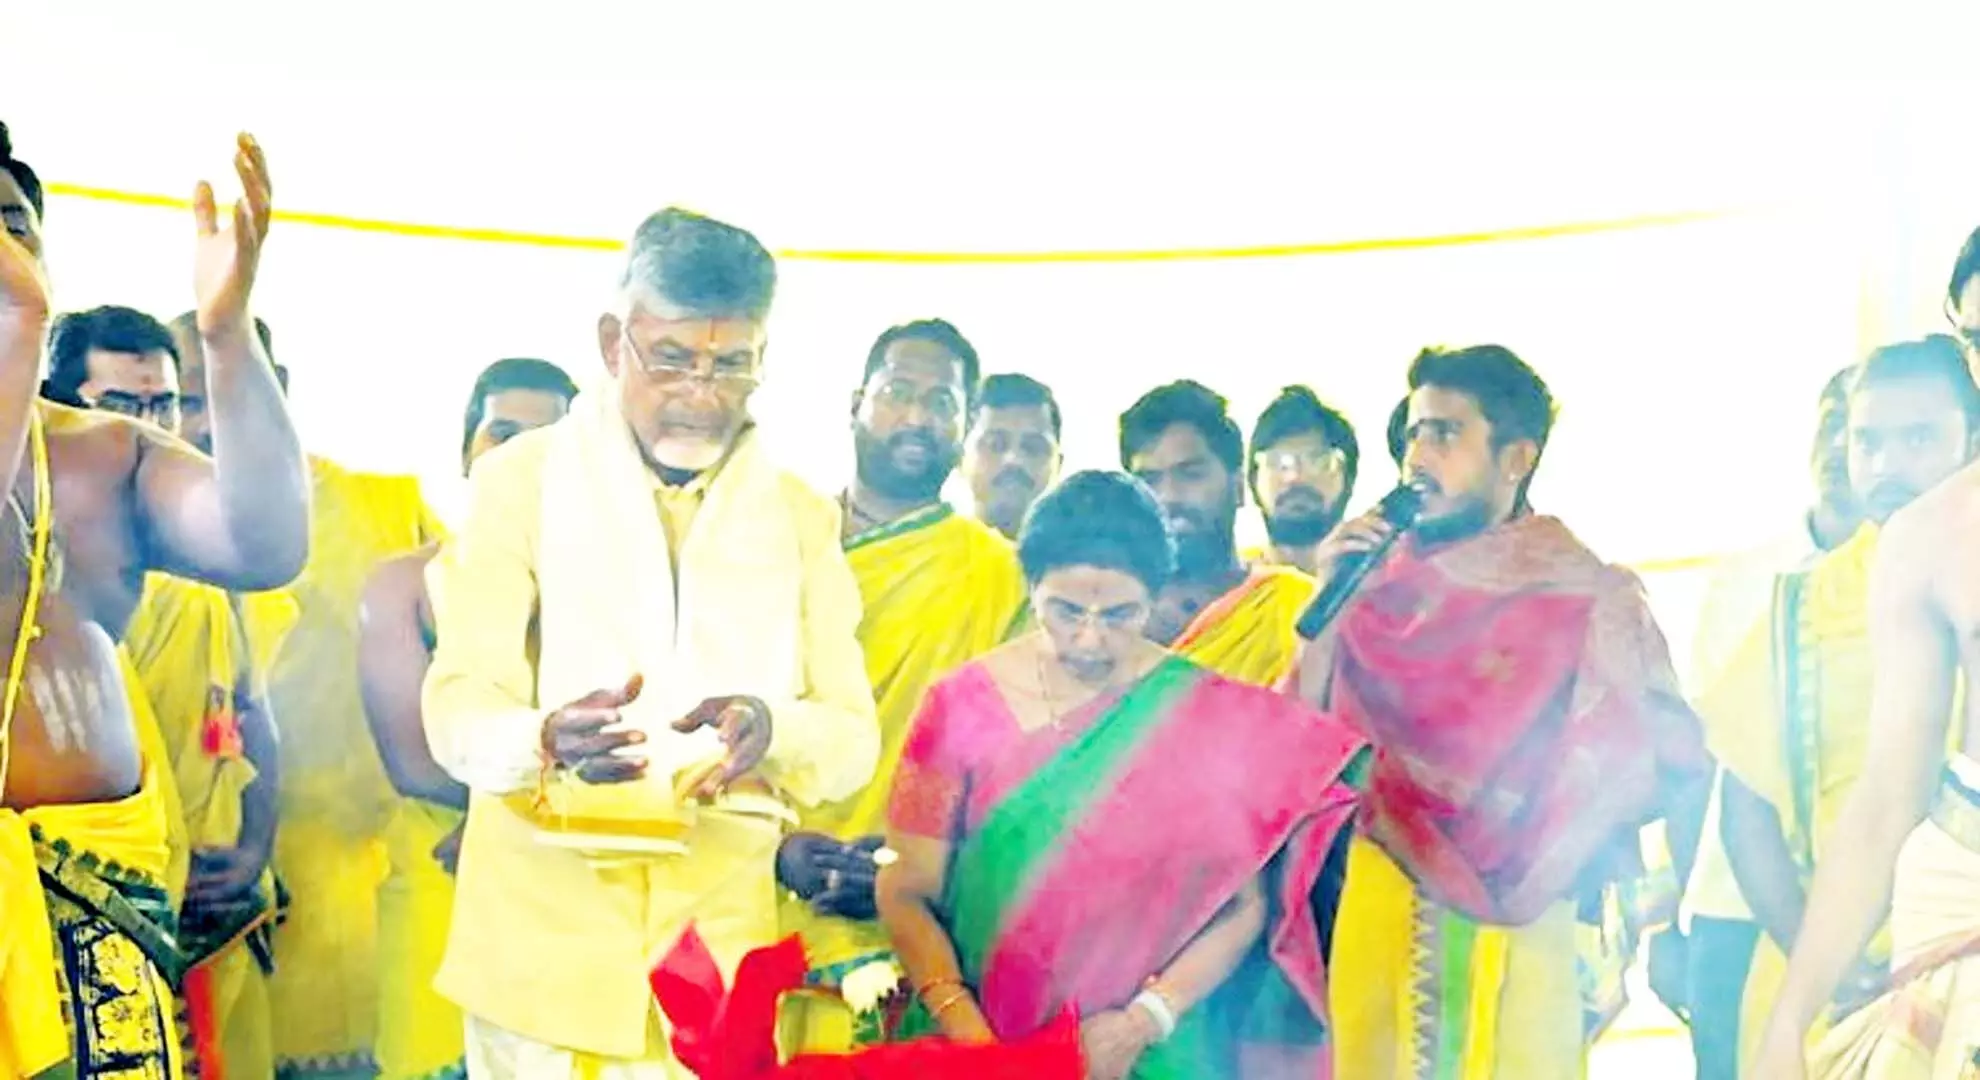 चंद्रबाबू नायडू ने आंध्र प्रदेश के विकास पर बहस के लिए मुख्यमंत्री को आमंत्रित किया